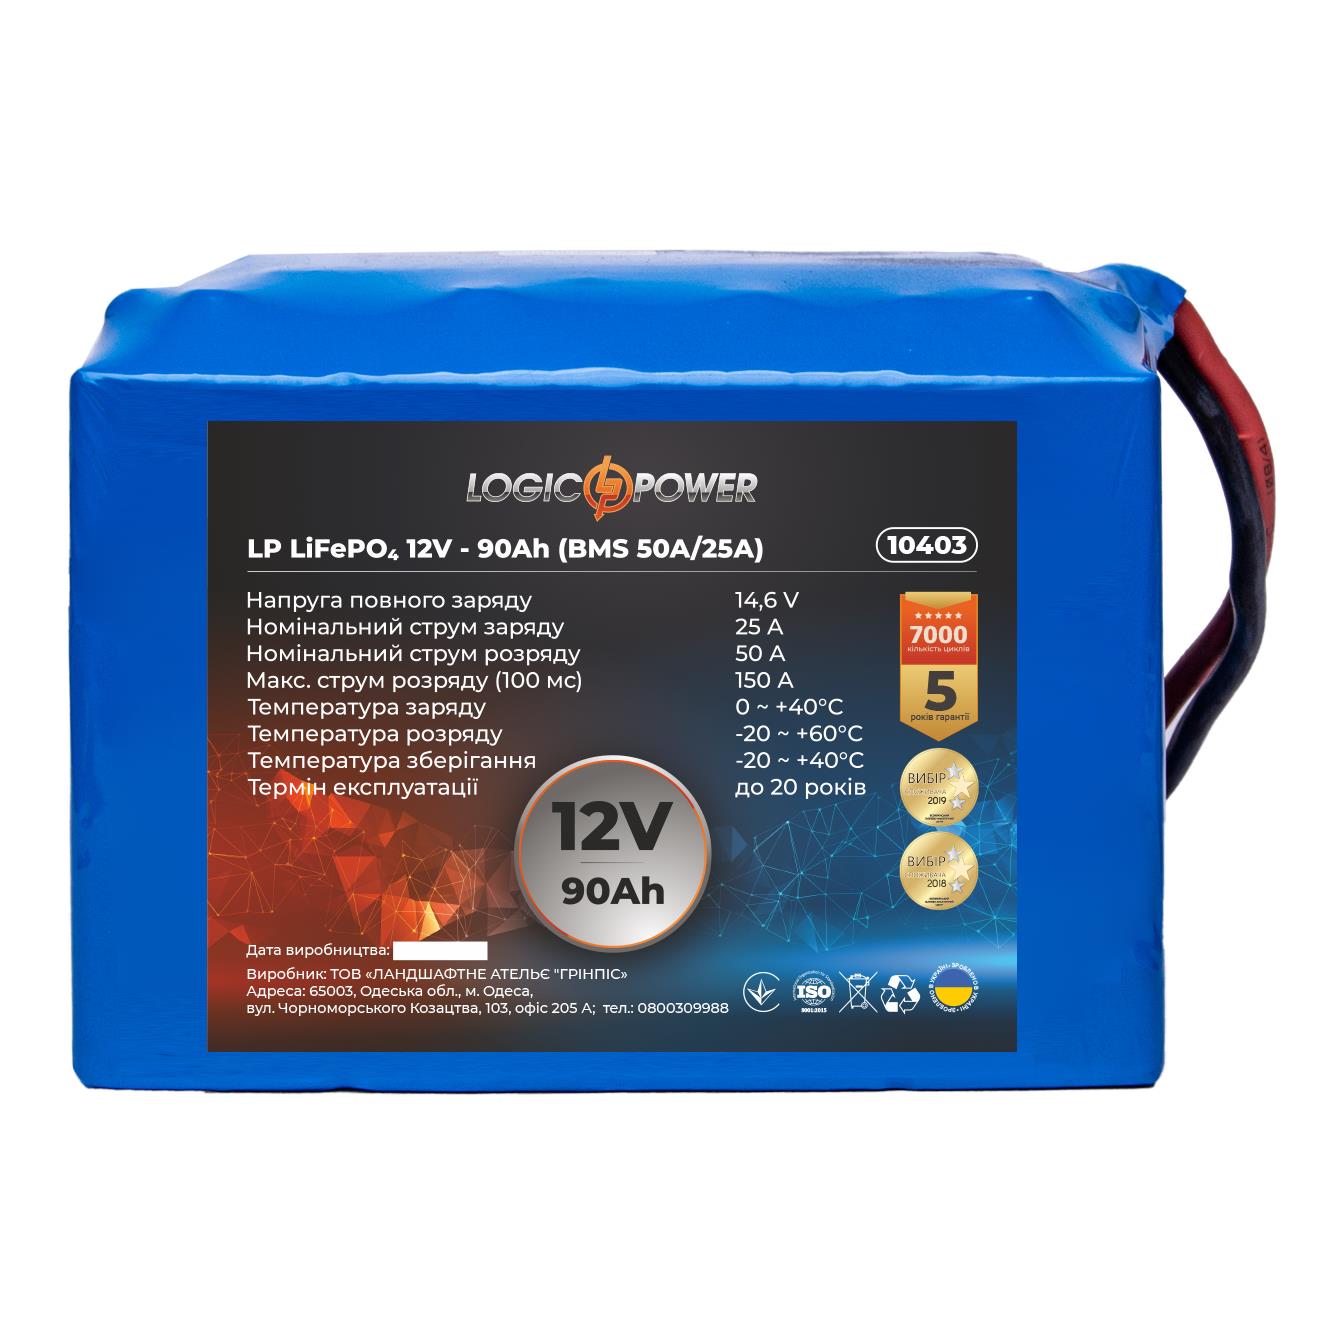 Акумулятор літій-залізо-фосфатний LogicPower LP LiFePO4 12V - 90 Ah (BMS 50A/25A) (10403)